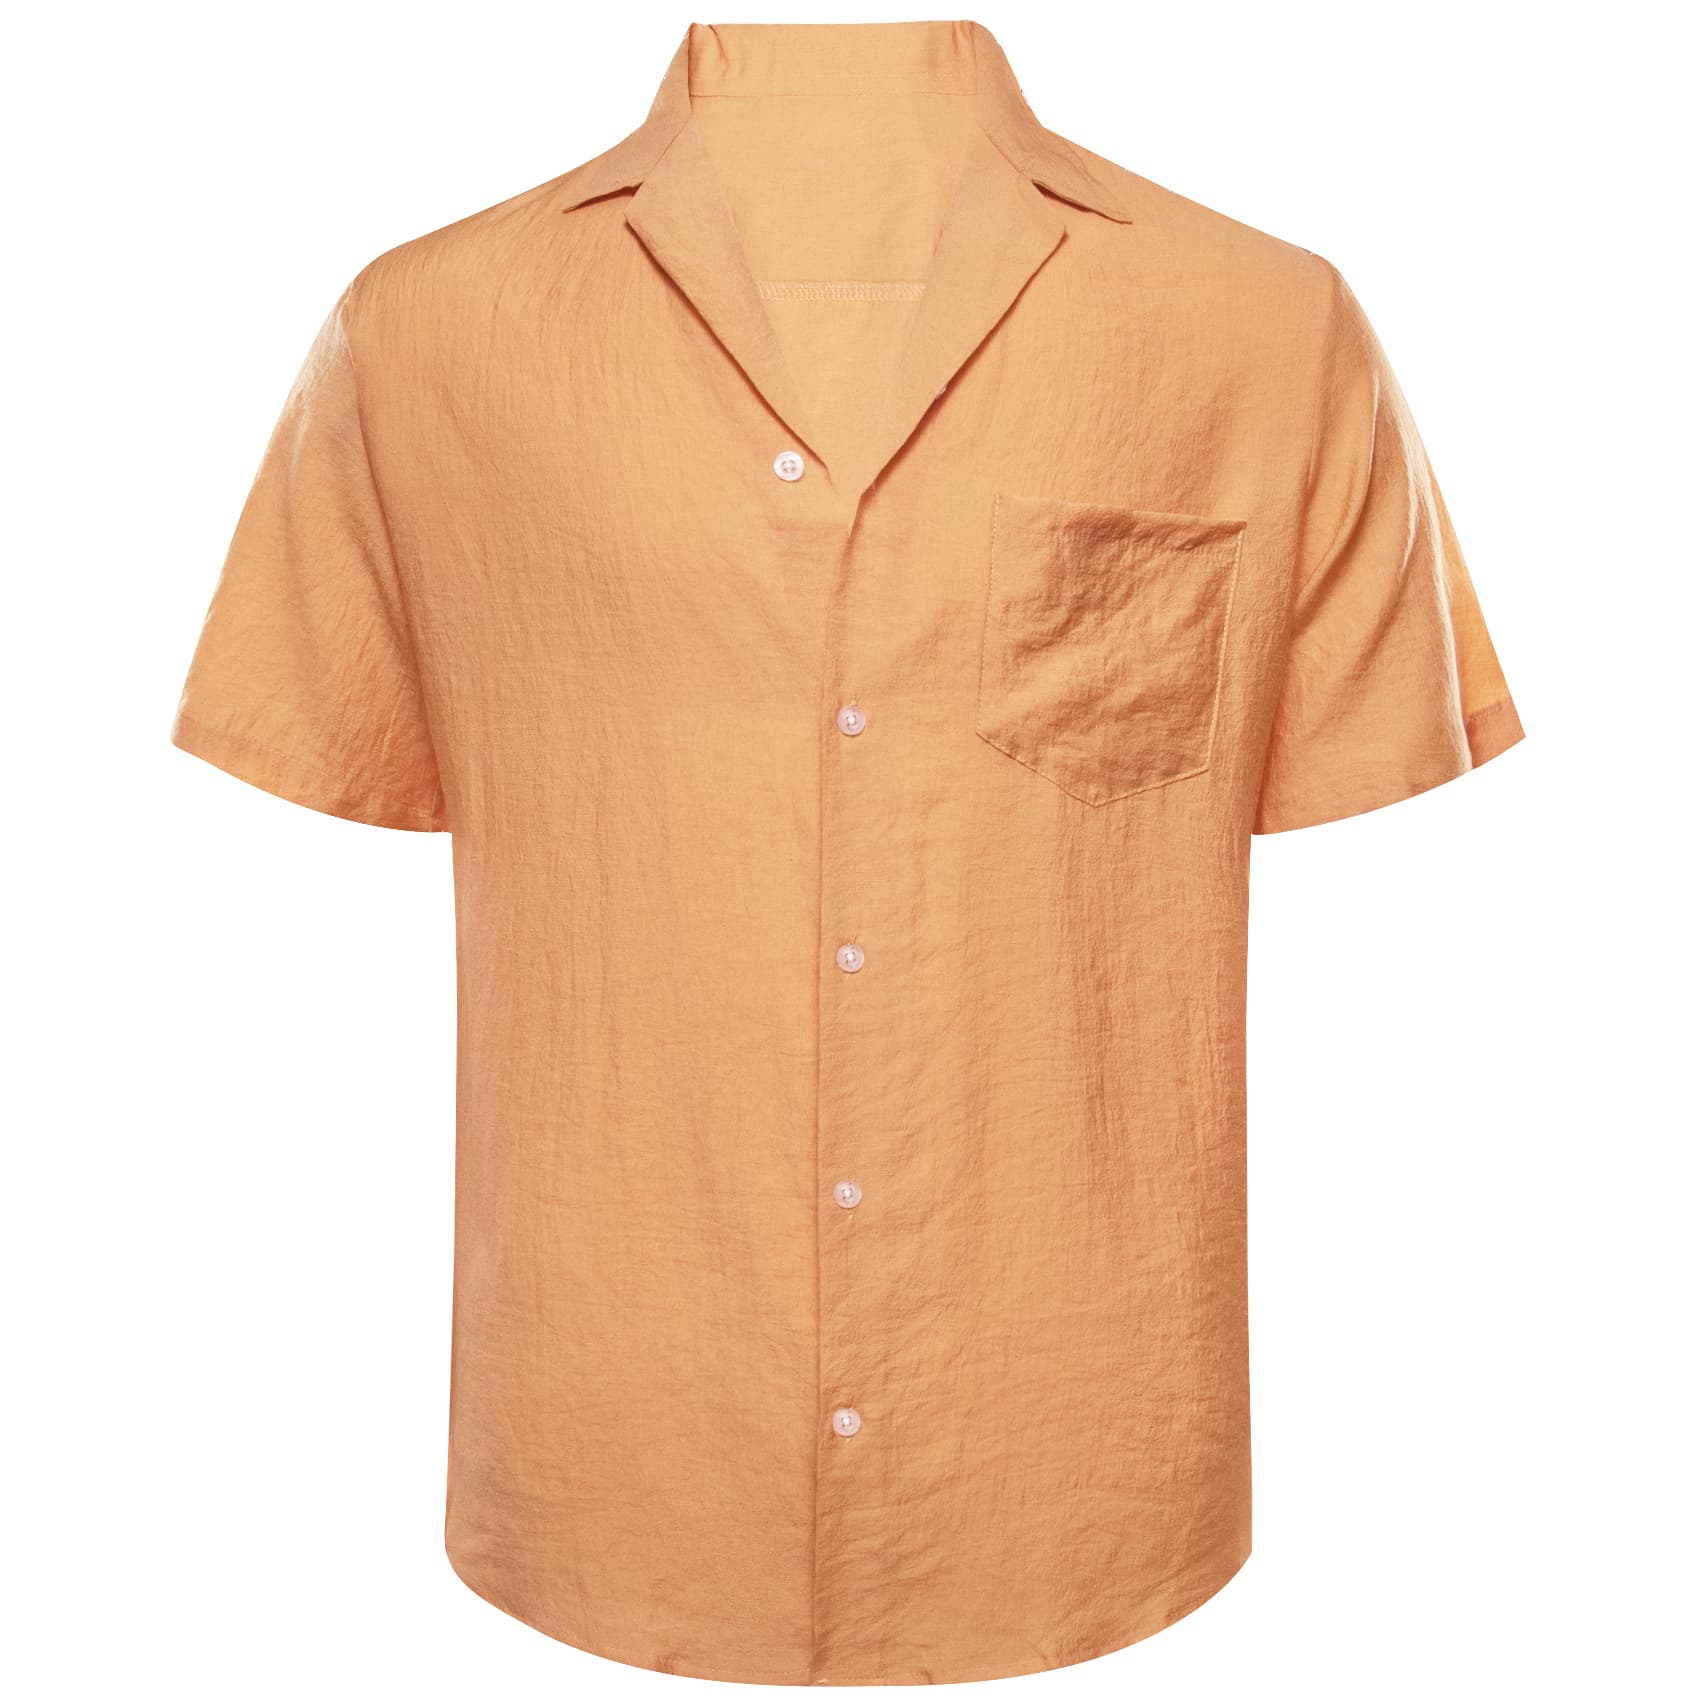 Light orange men's satin shirt short sleeve